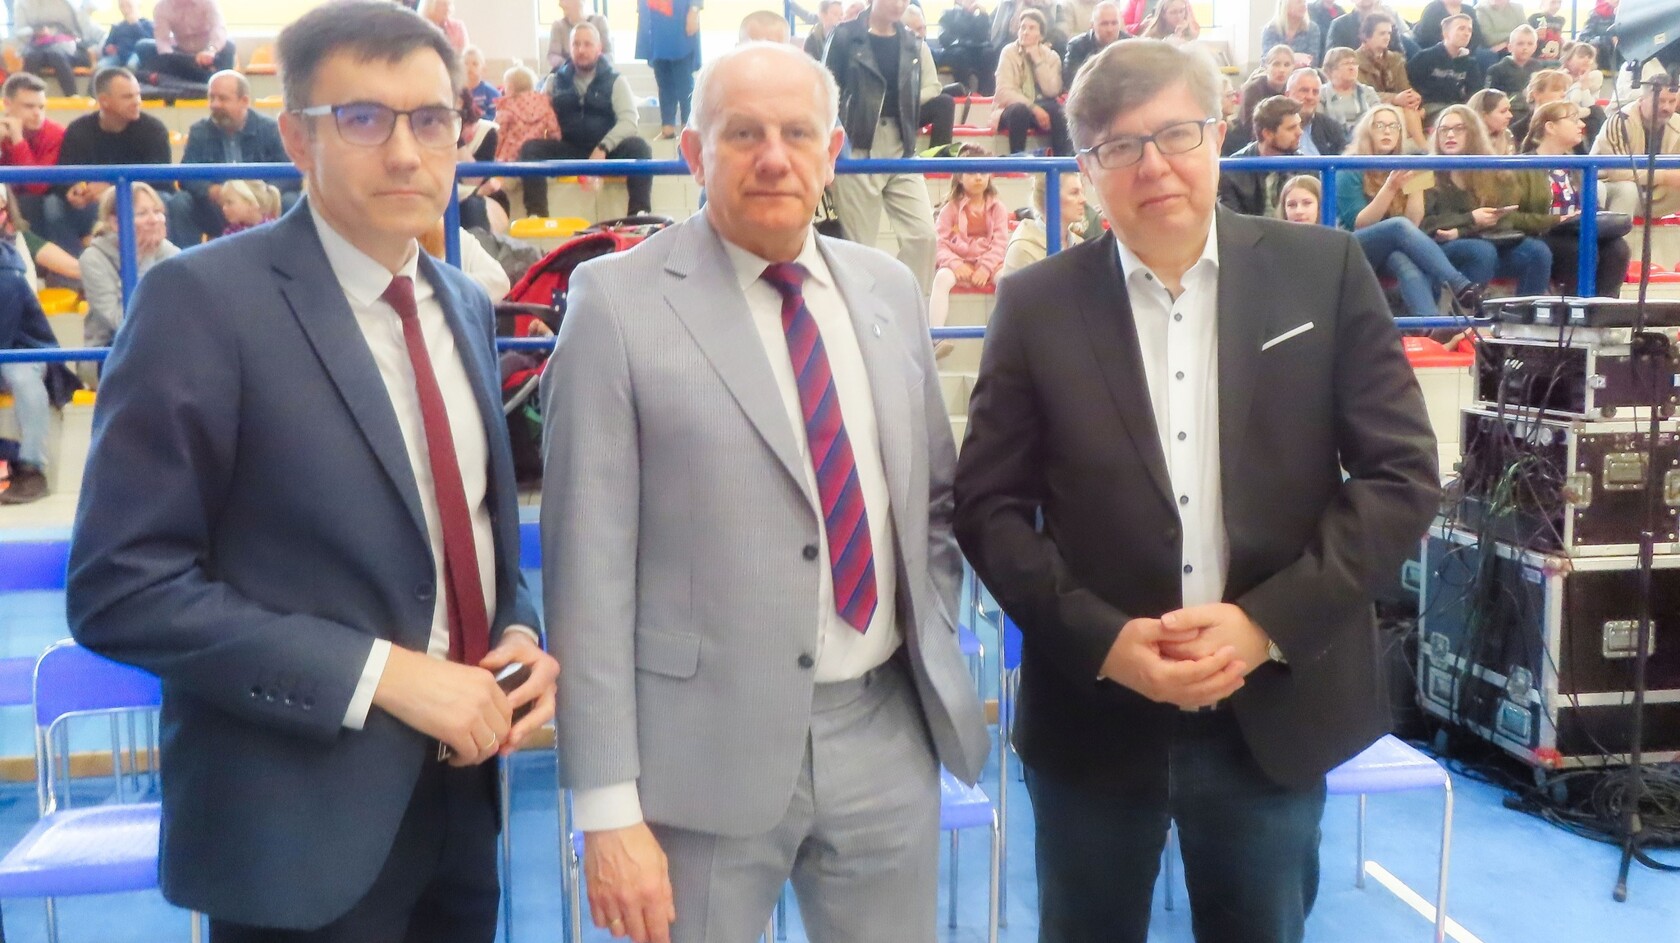 Od lewej: Przewodniczący Rady Gminy Witold Szmidtke, Burmistrz Wojciech Kankowski, Poseł Tadeusz Aziewicz